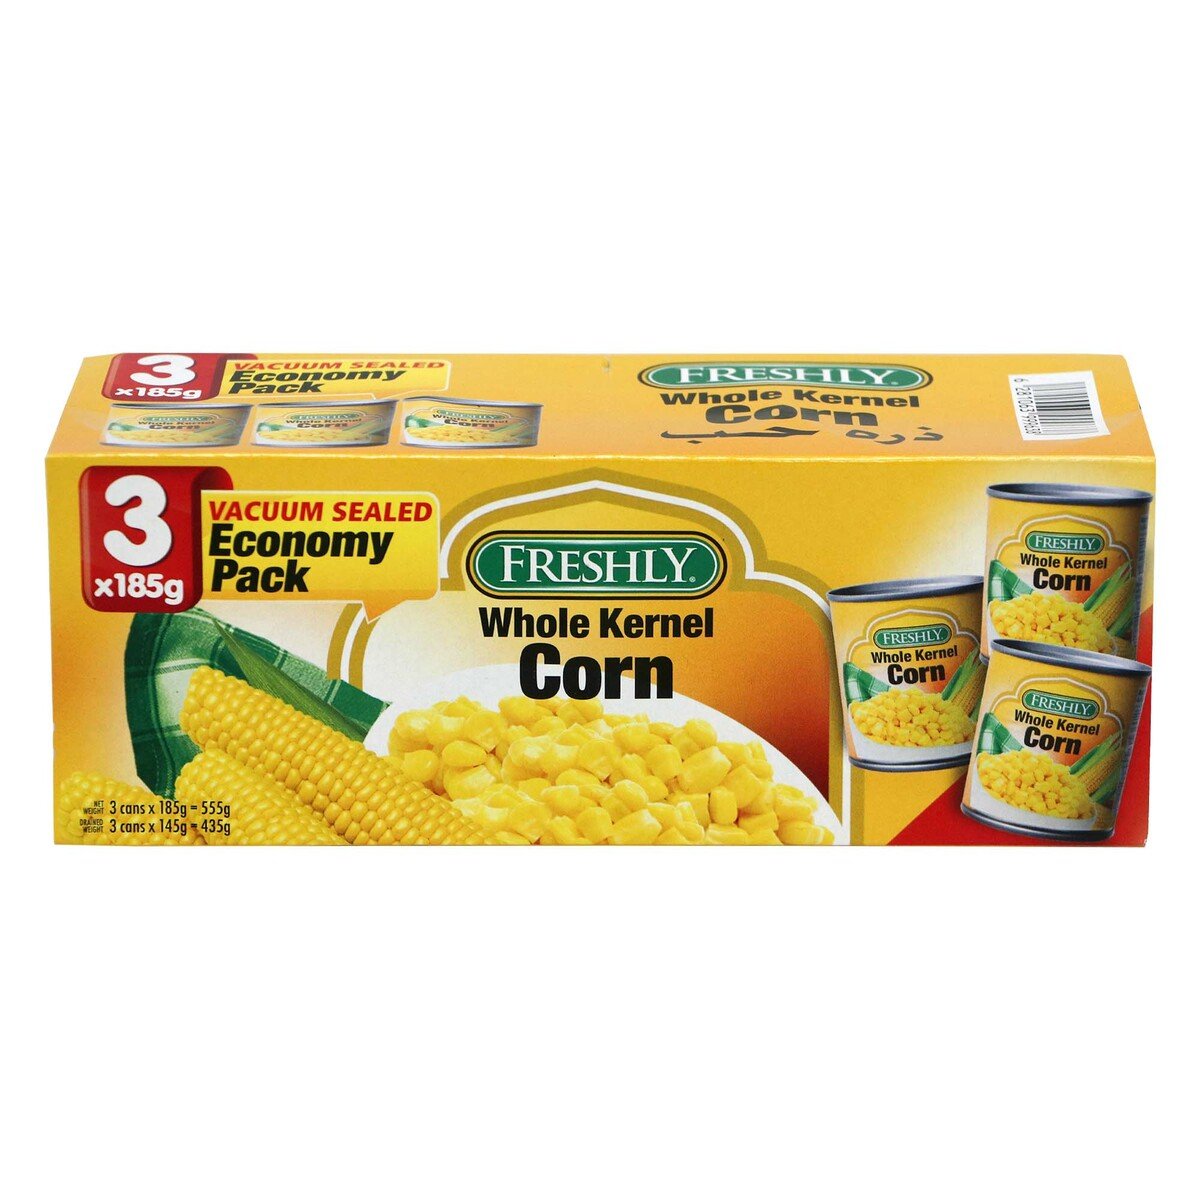 Freshly Whole Kernel Corn 3 x 185g